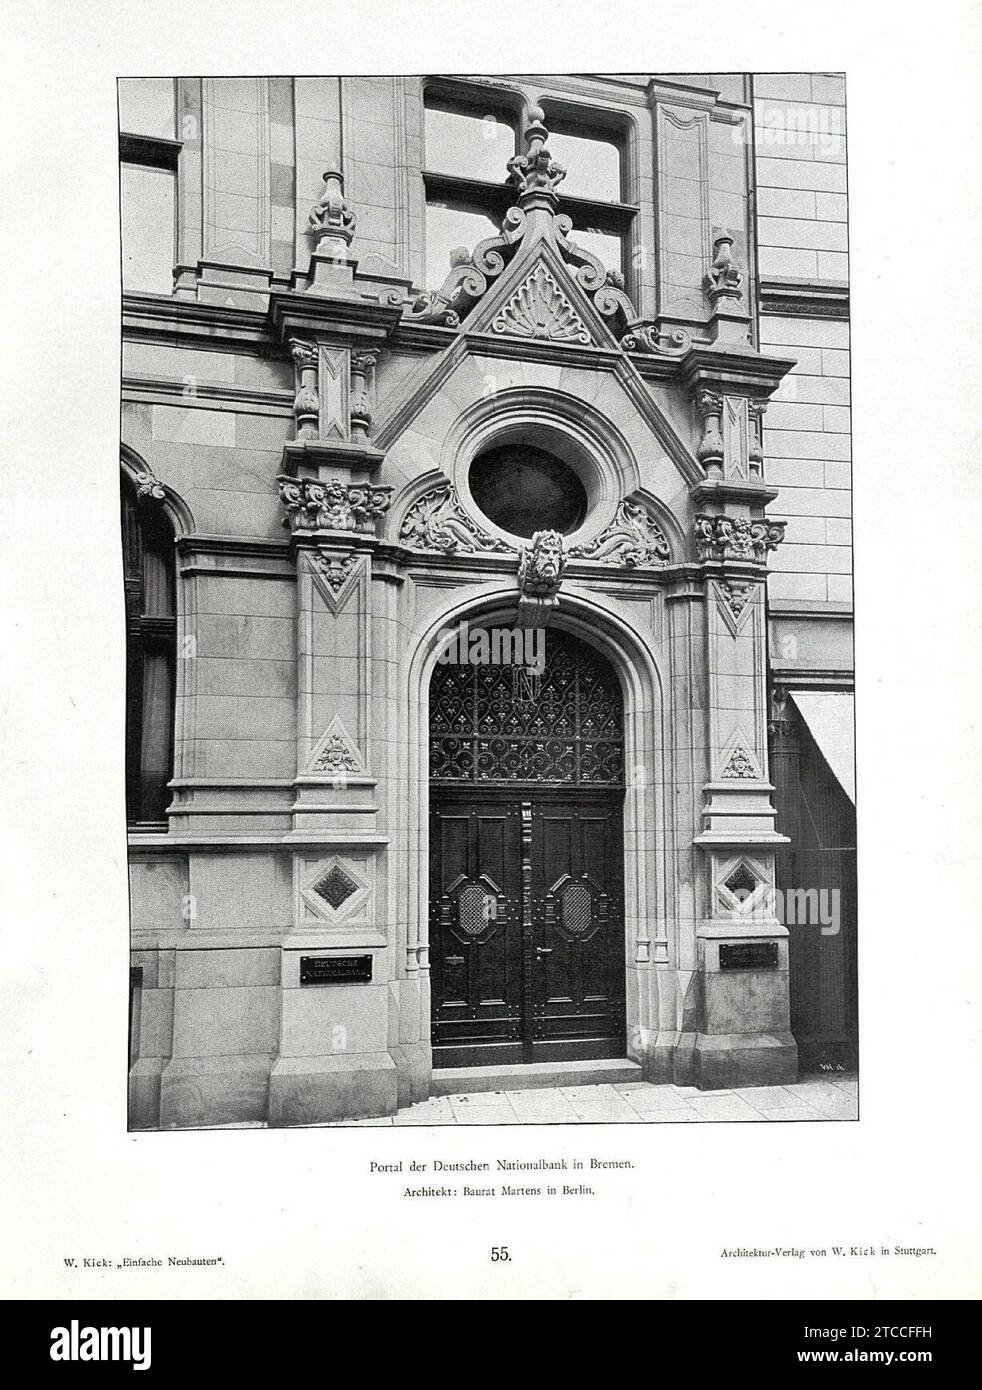 Wilhelm Kick, einfache Neubauten, Stuttgart 1890, Portal der Deutschen Nationalbank in Bremen, Architekt Baurat Martens in Berlin. Stockfoto